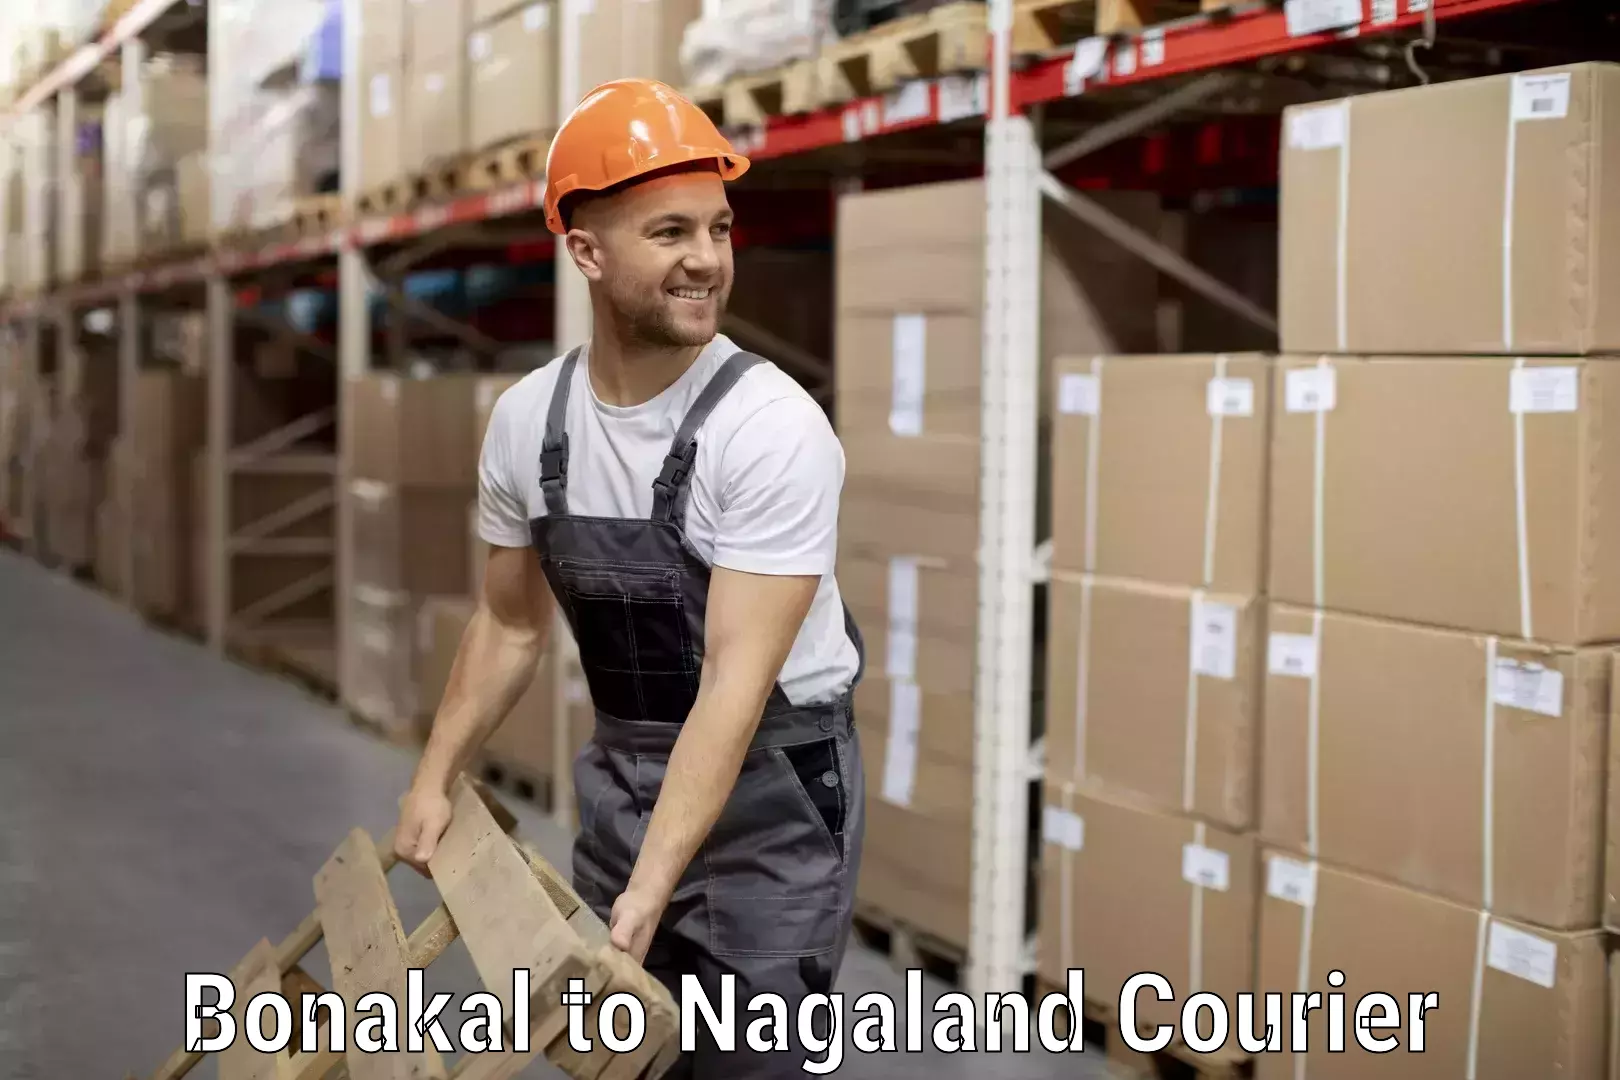 Luggage transport company Bonakal to NIT Nagaland